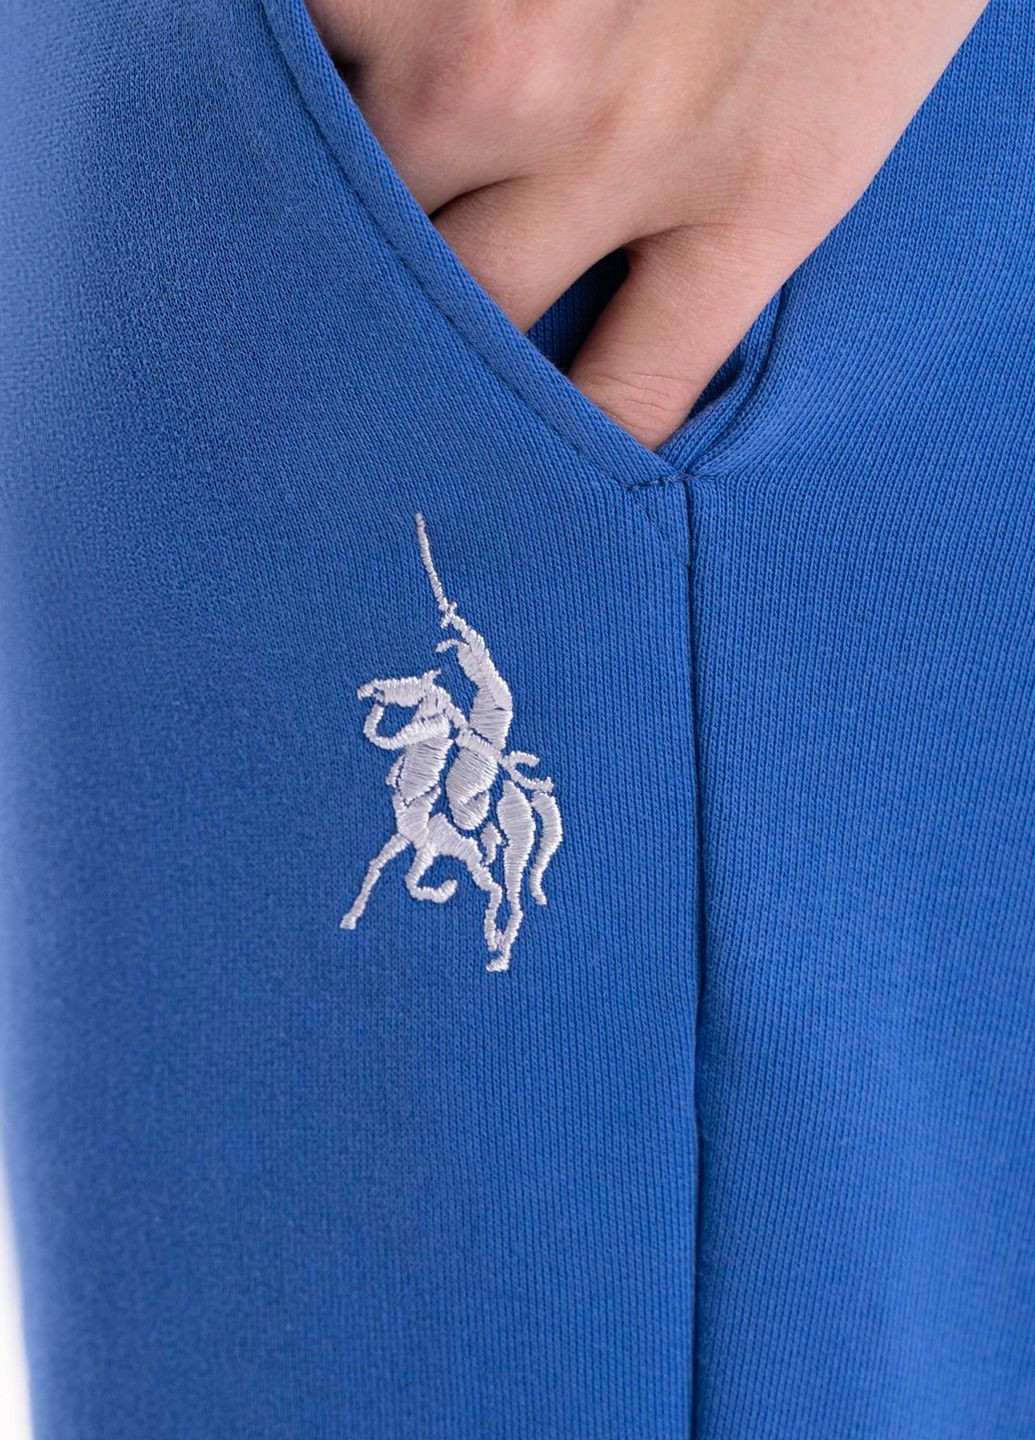 Спортивные шорты женские Freedom синие Arber Woman shorts w5 (282844908)